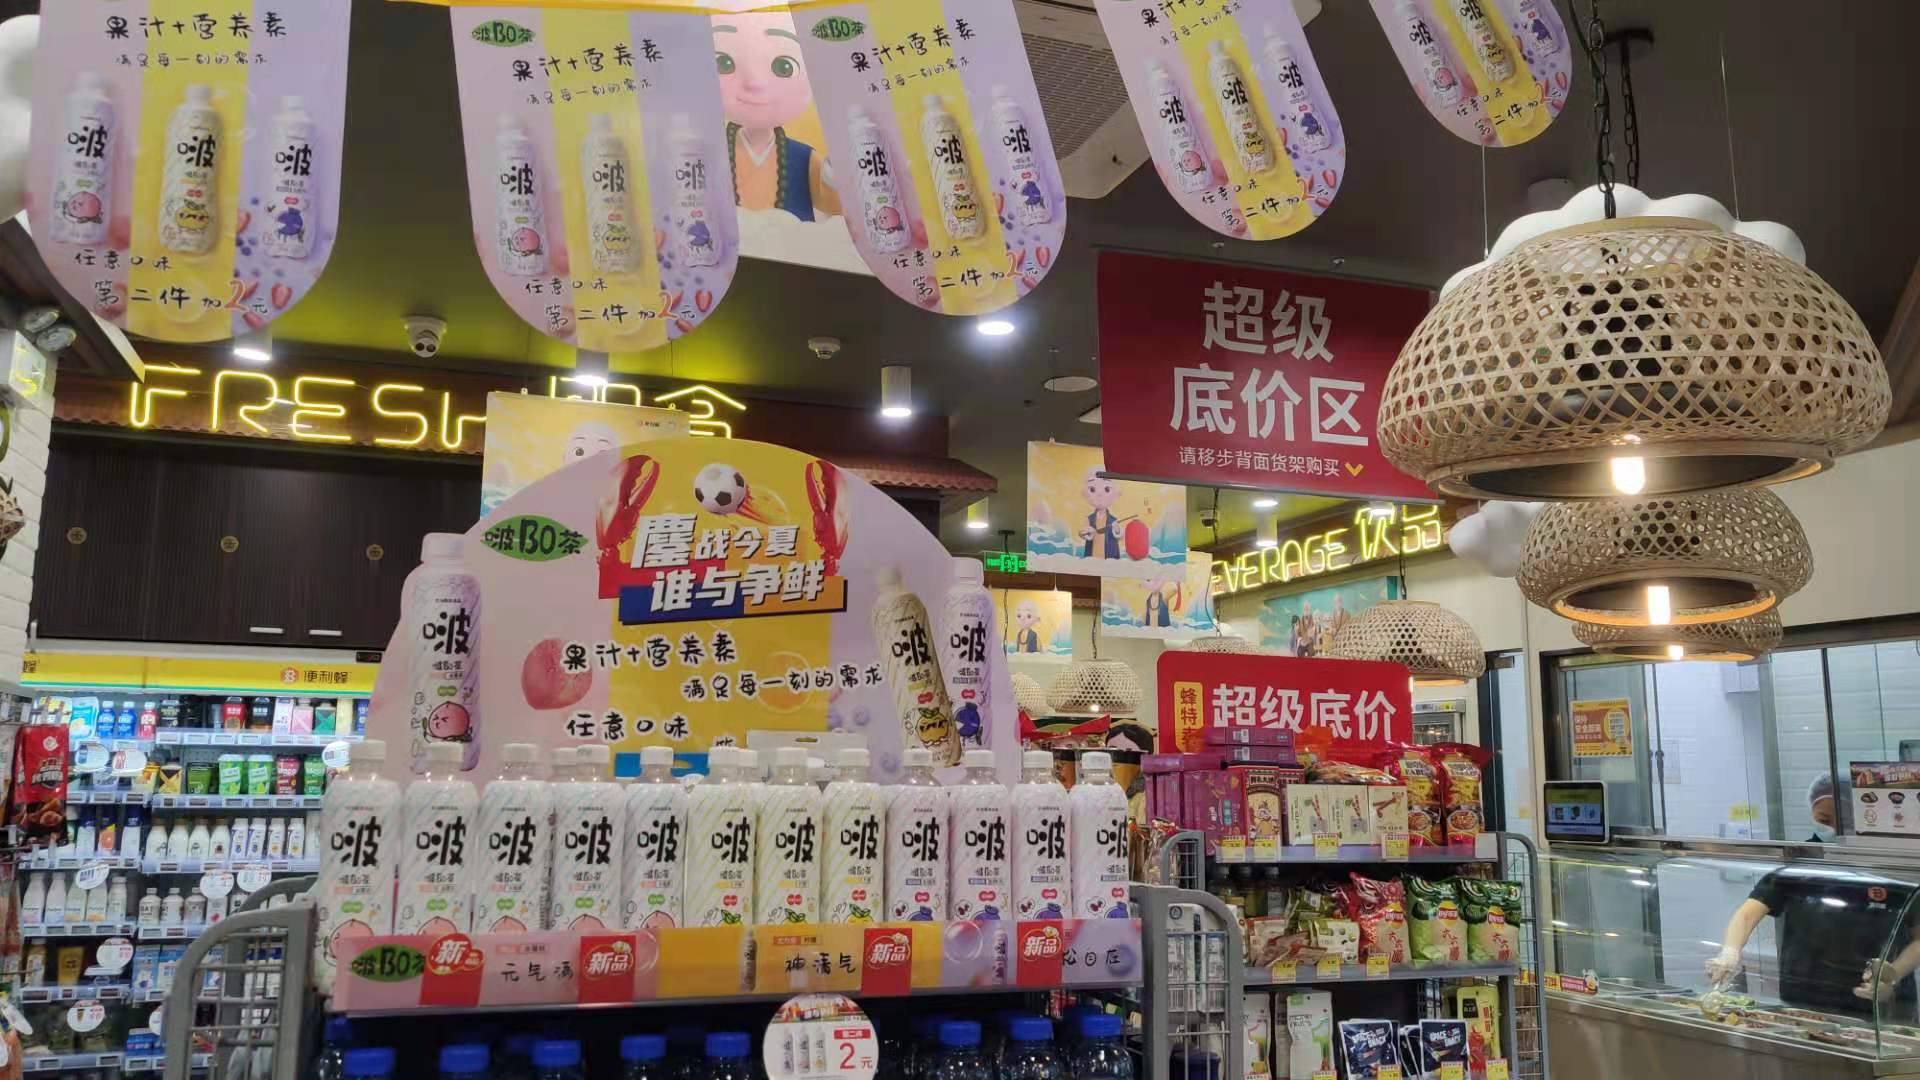 大家喜欢的啵bo茶除了在京东有售以外 也登陆了华东便利蜂超市啦 作为